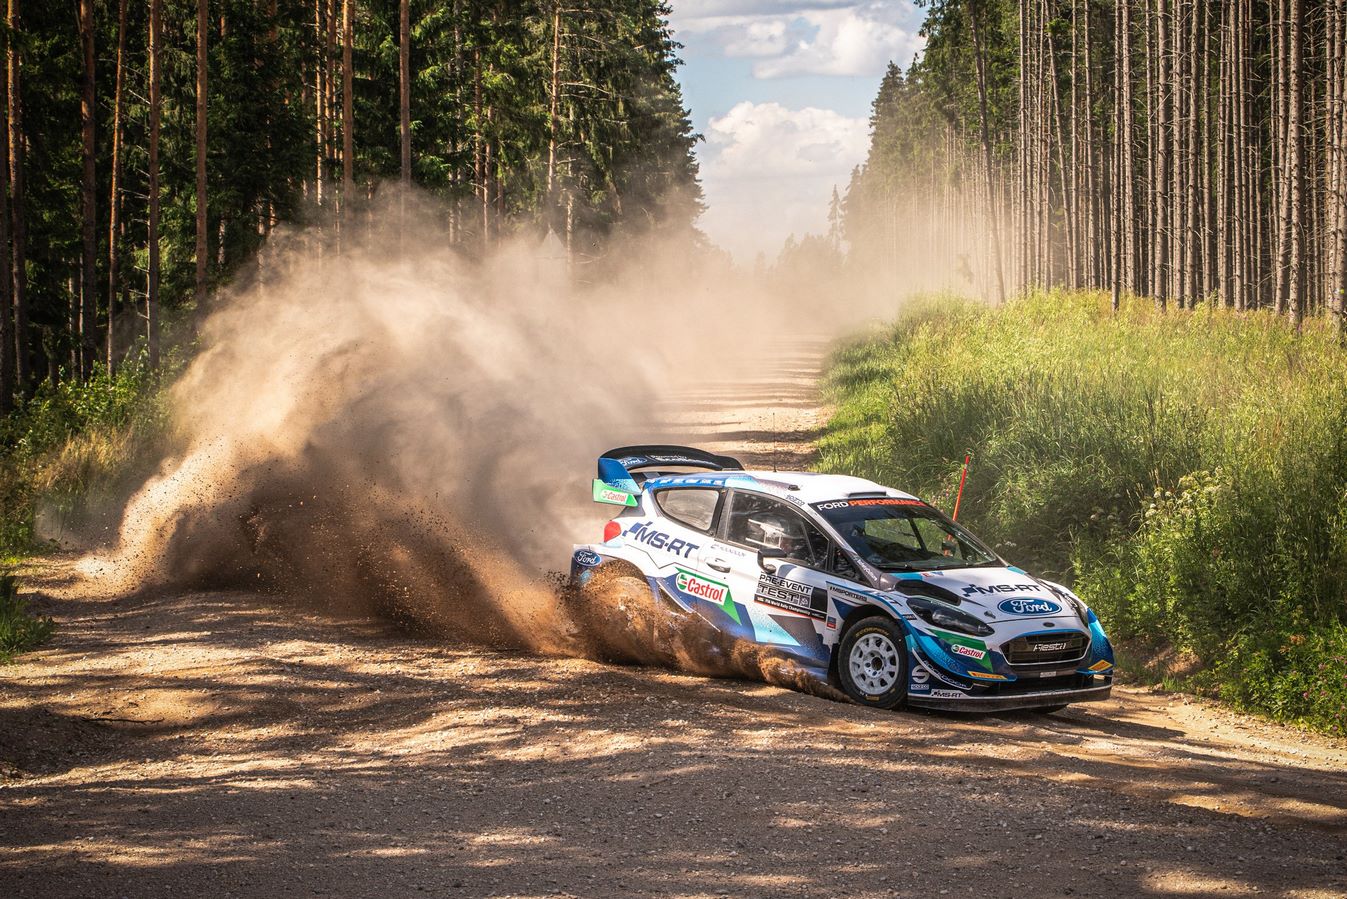 Wrc Calendrier 2022 Le WRC dévoile un premier calendrier 2022 avec 9 manches